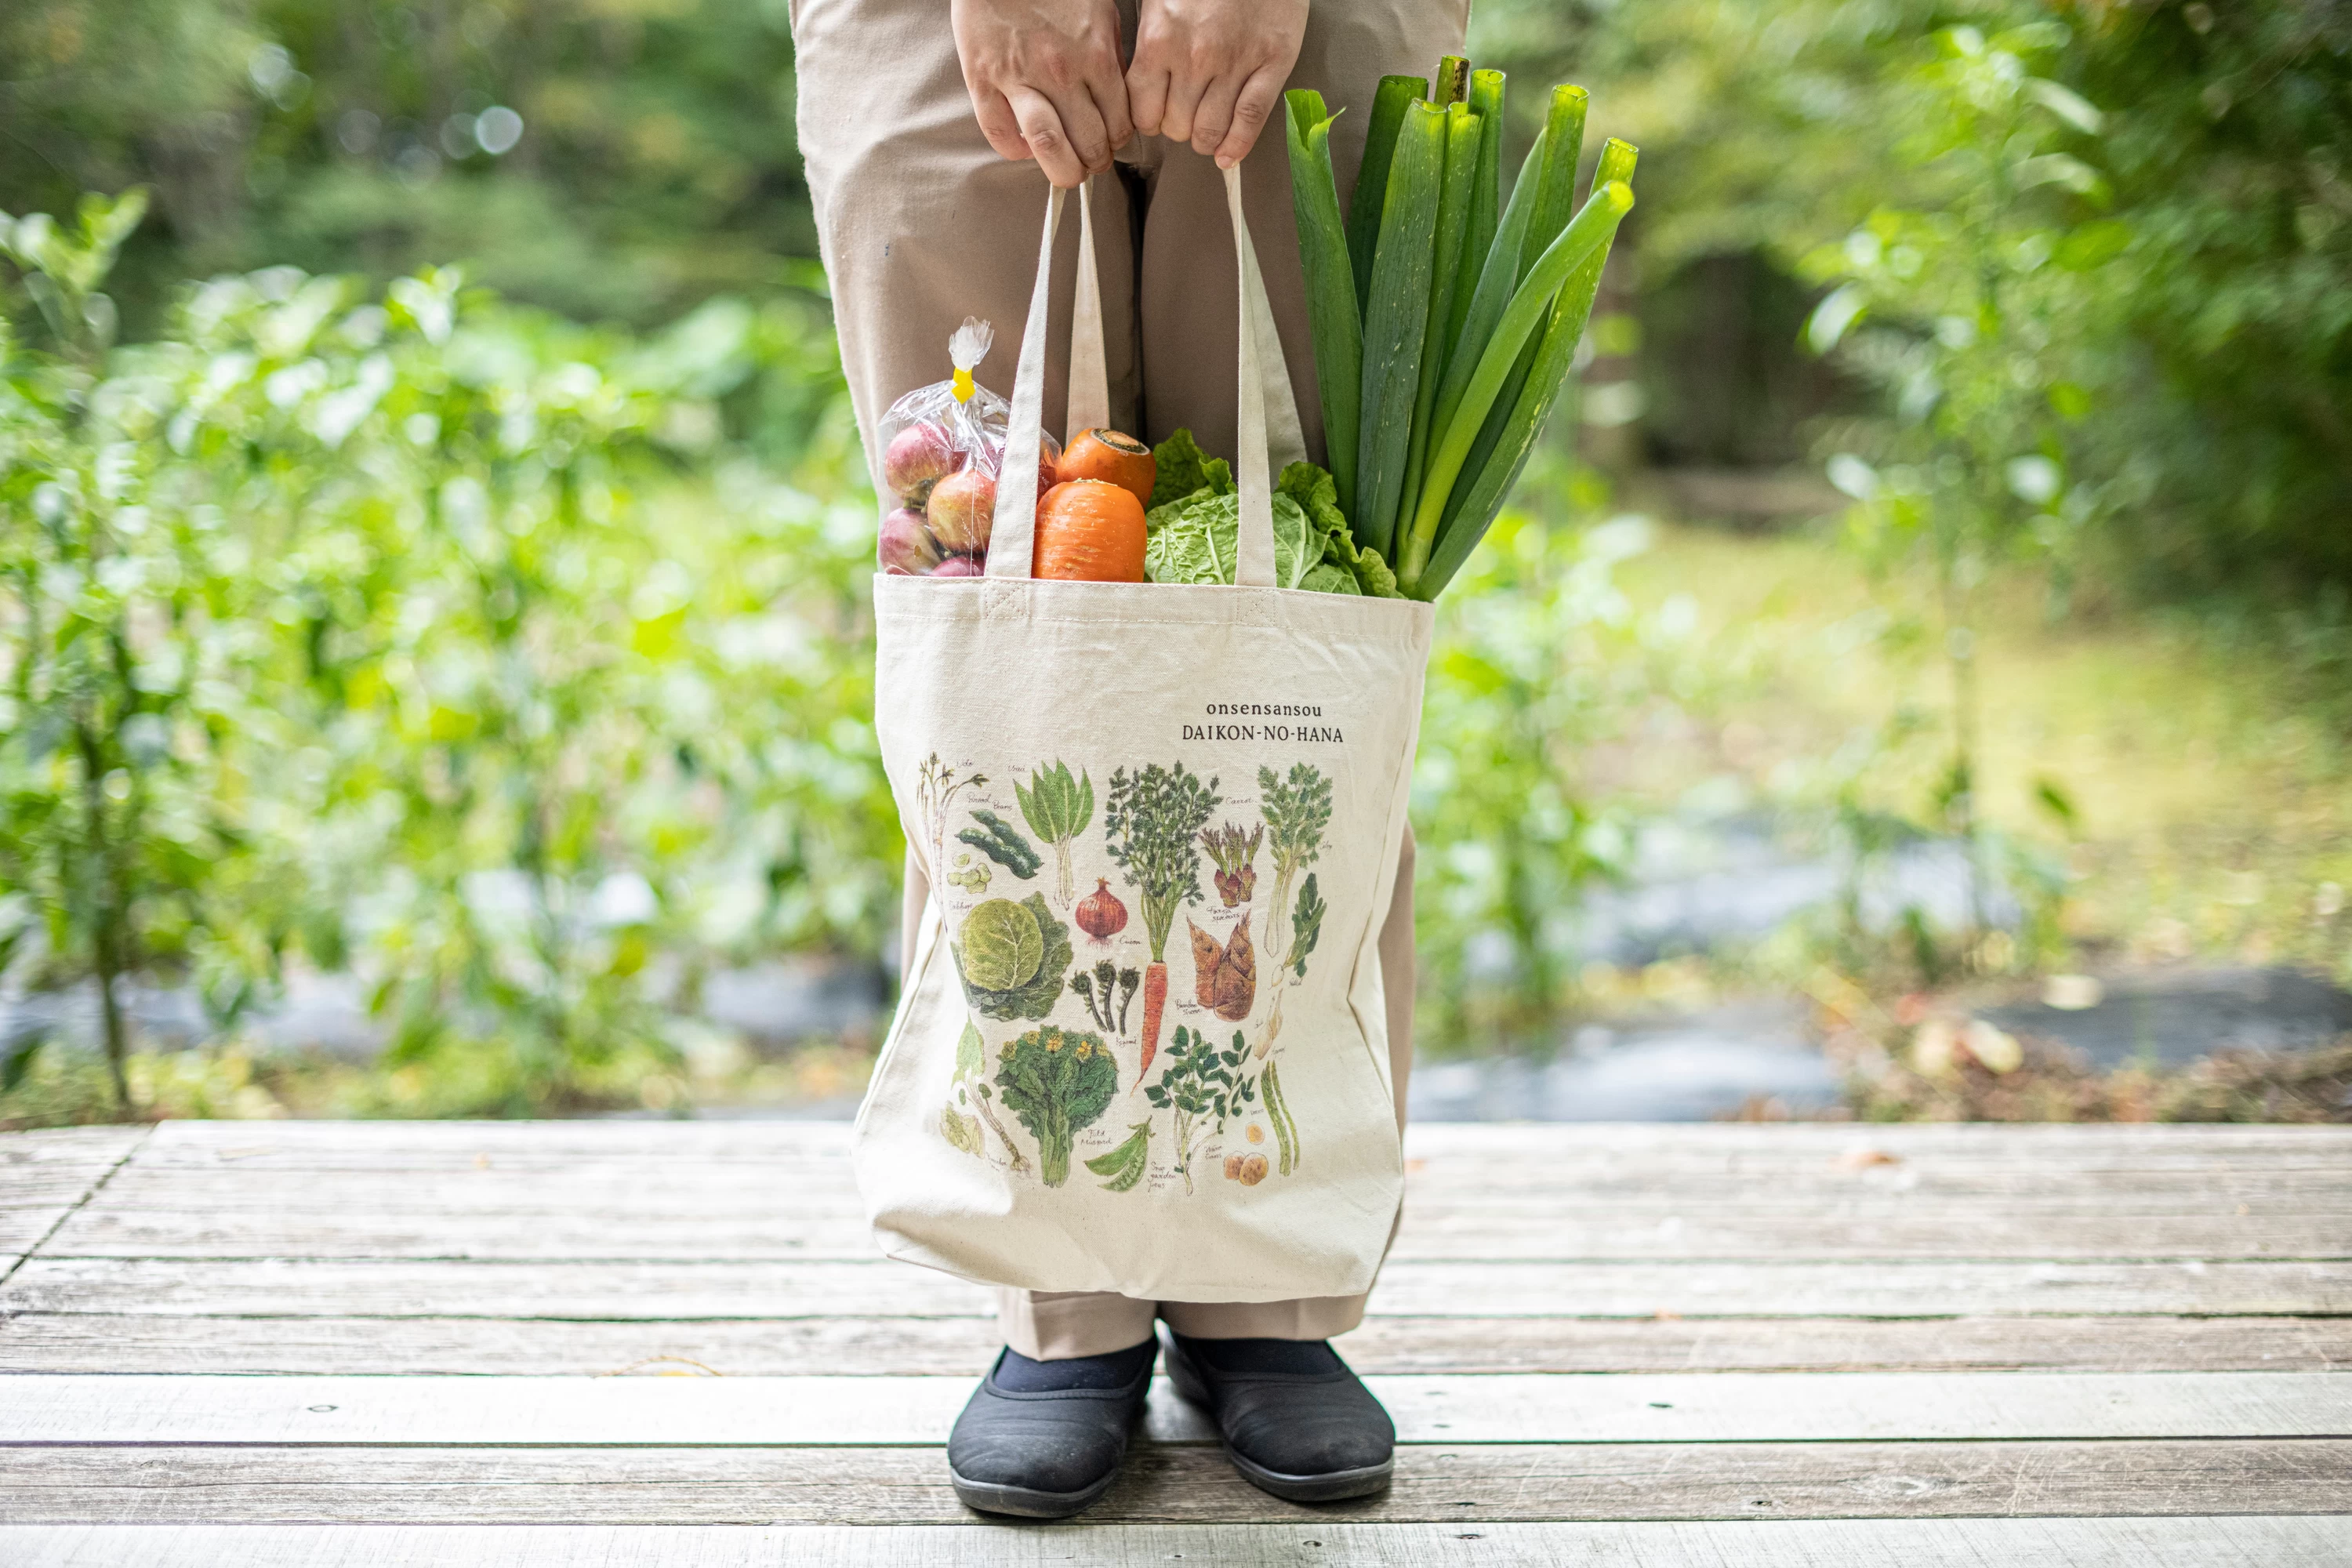 「阿部さんが描いた野菜のトートバッグ」にまつわるストーリー